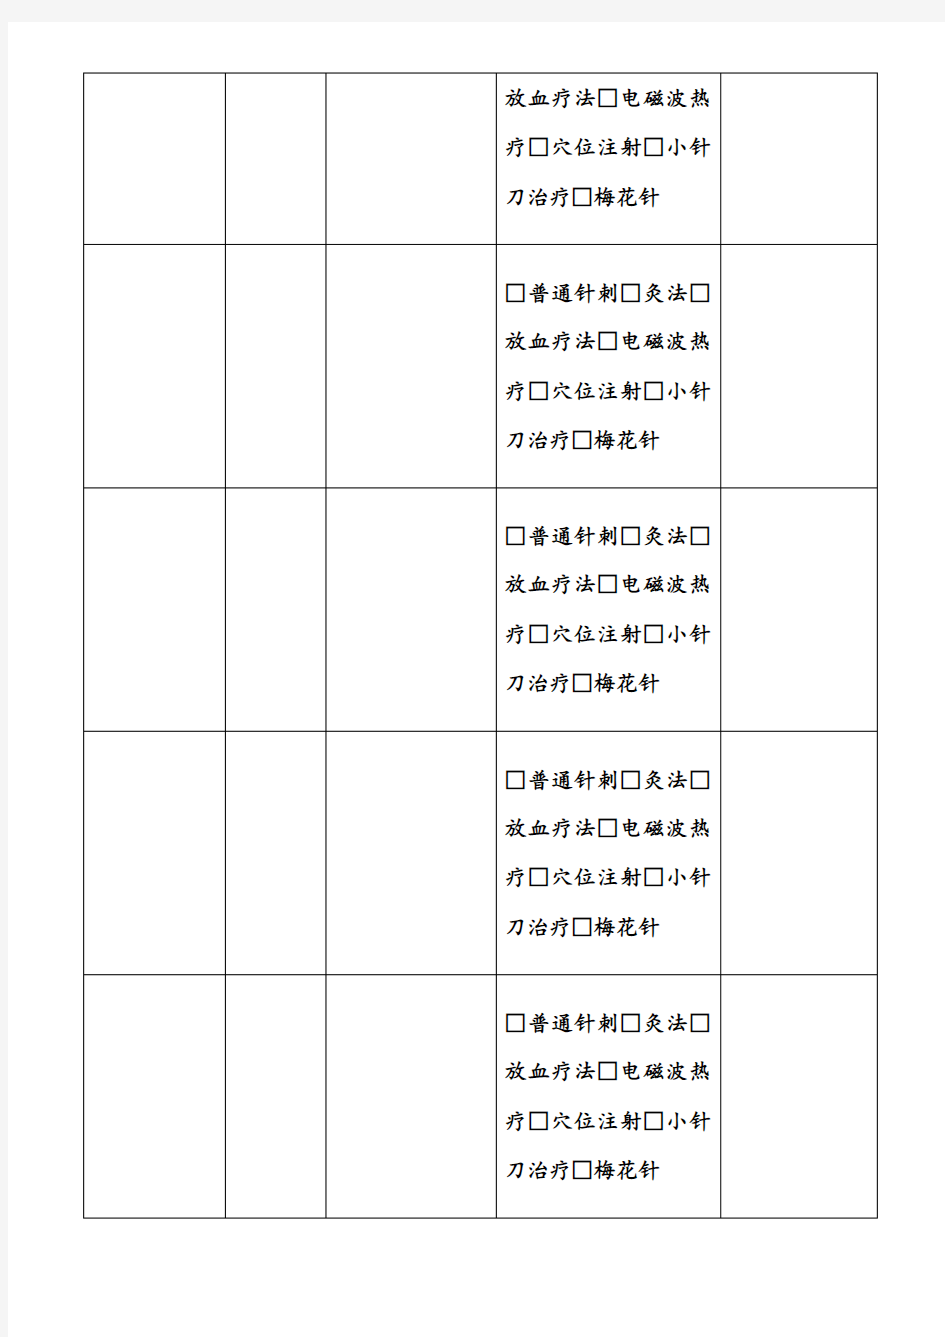 中医科物理治疗登记表